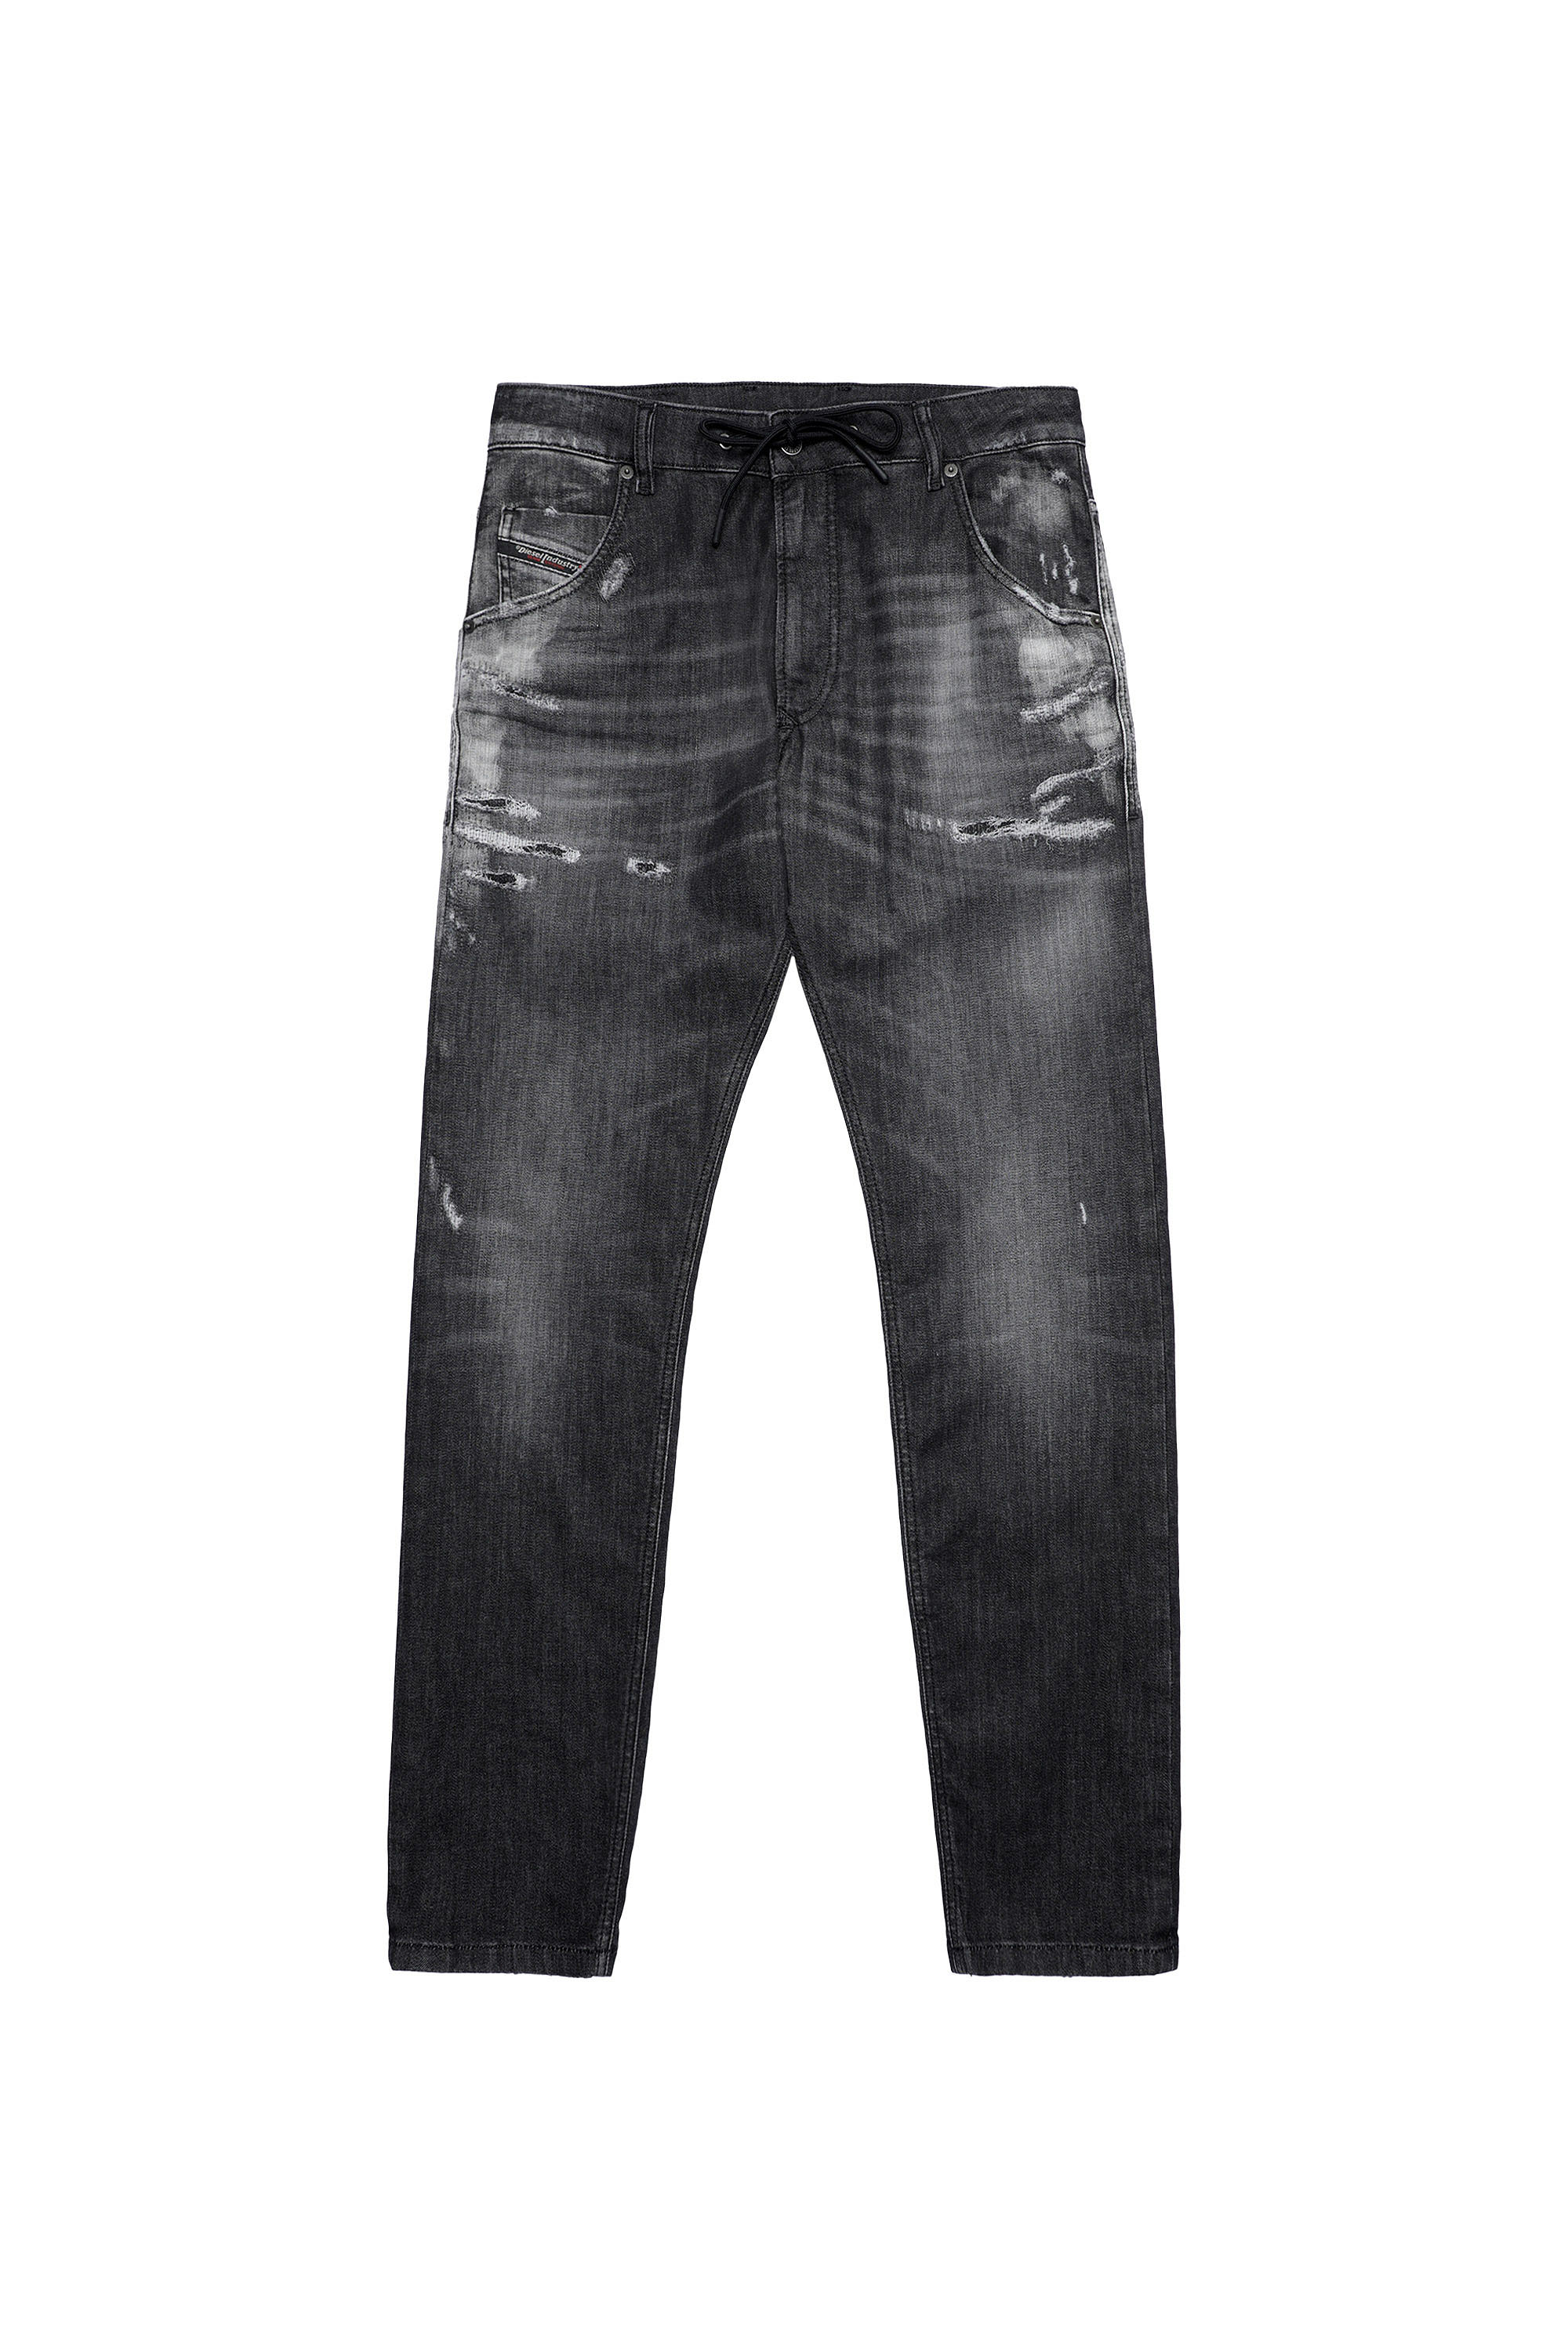 Diesel - Krooley Tapered JoggJeans® 09B53, Black/Dark Grey - Image 6